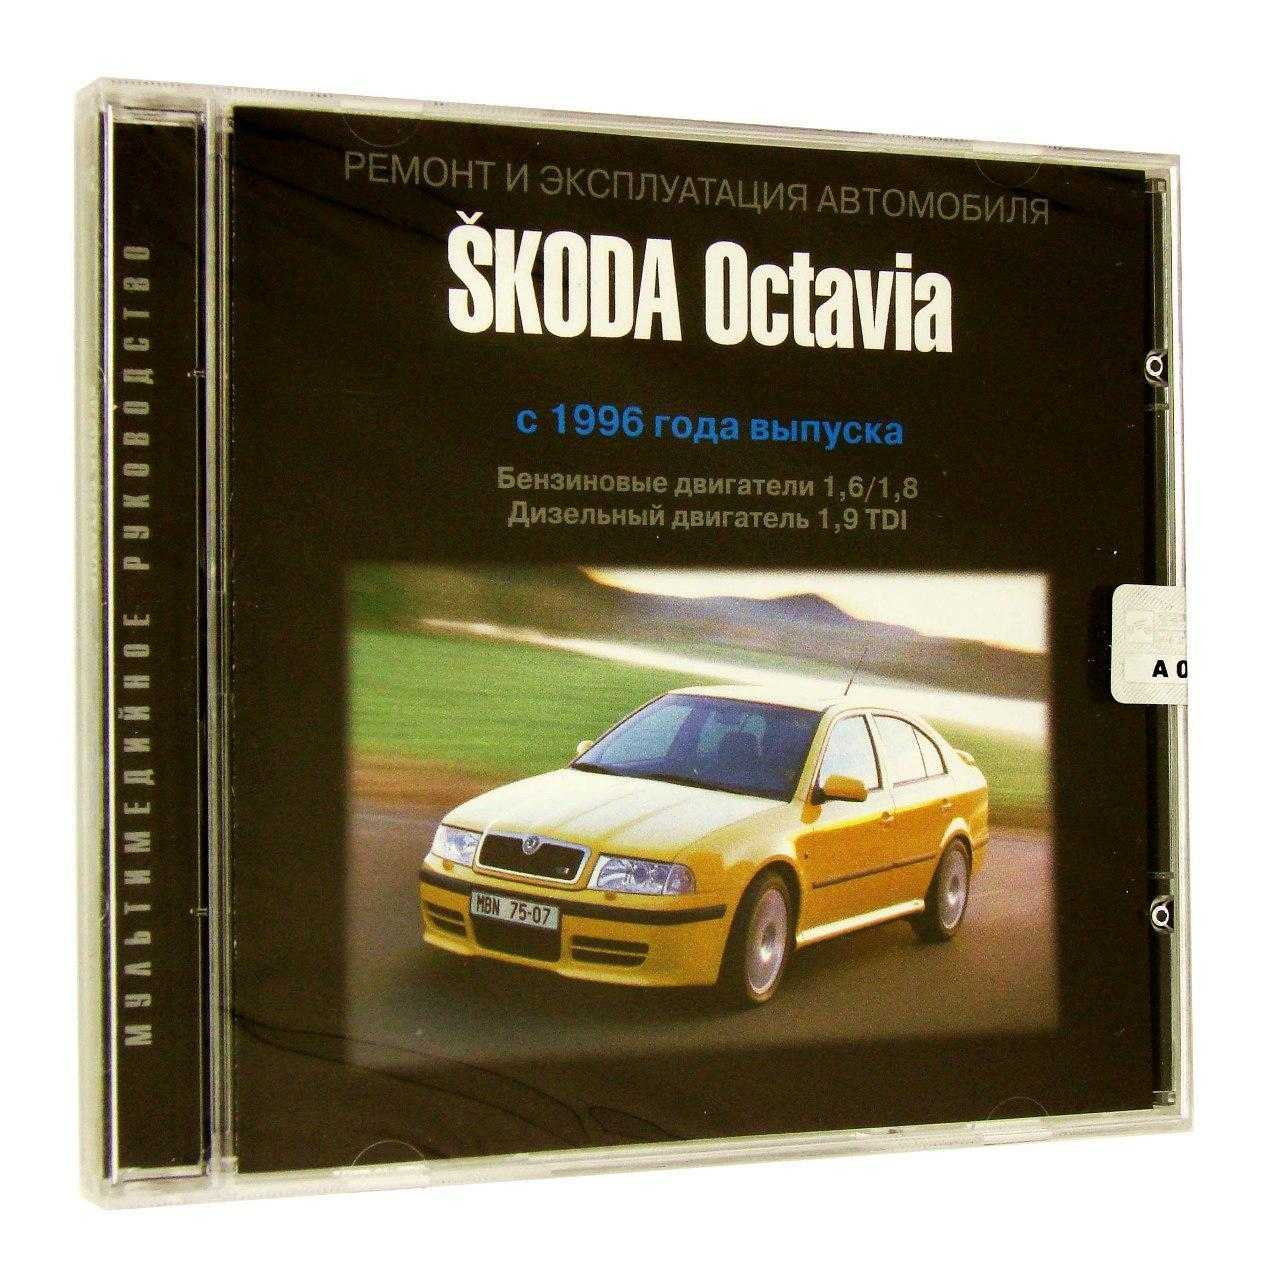 Skoda octavia с 1996, ремонт системы освещения инструкция онлайн